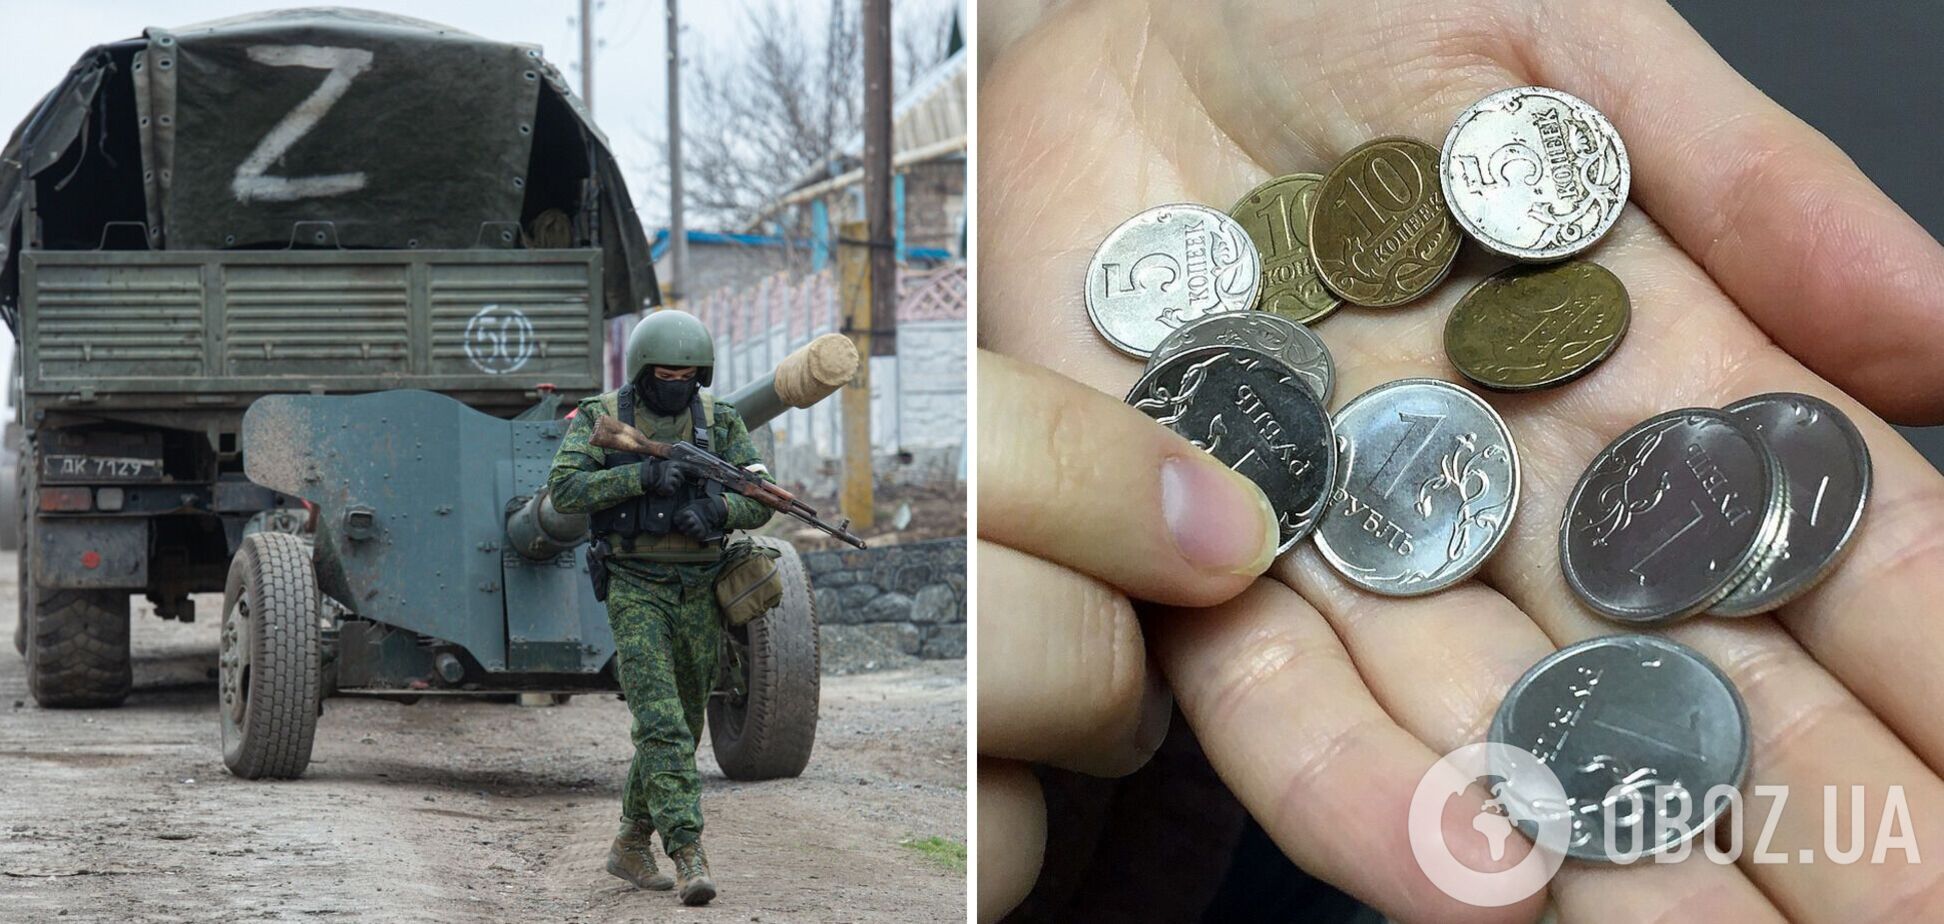 'Нас дурять': окупант поскаржився дружині, що його 'кинули' з виплатами за участь у війні проти України. Перехоплення